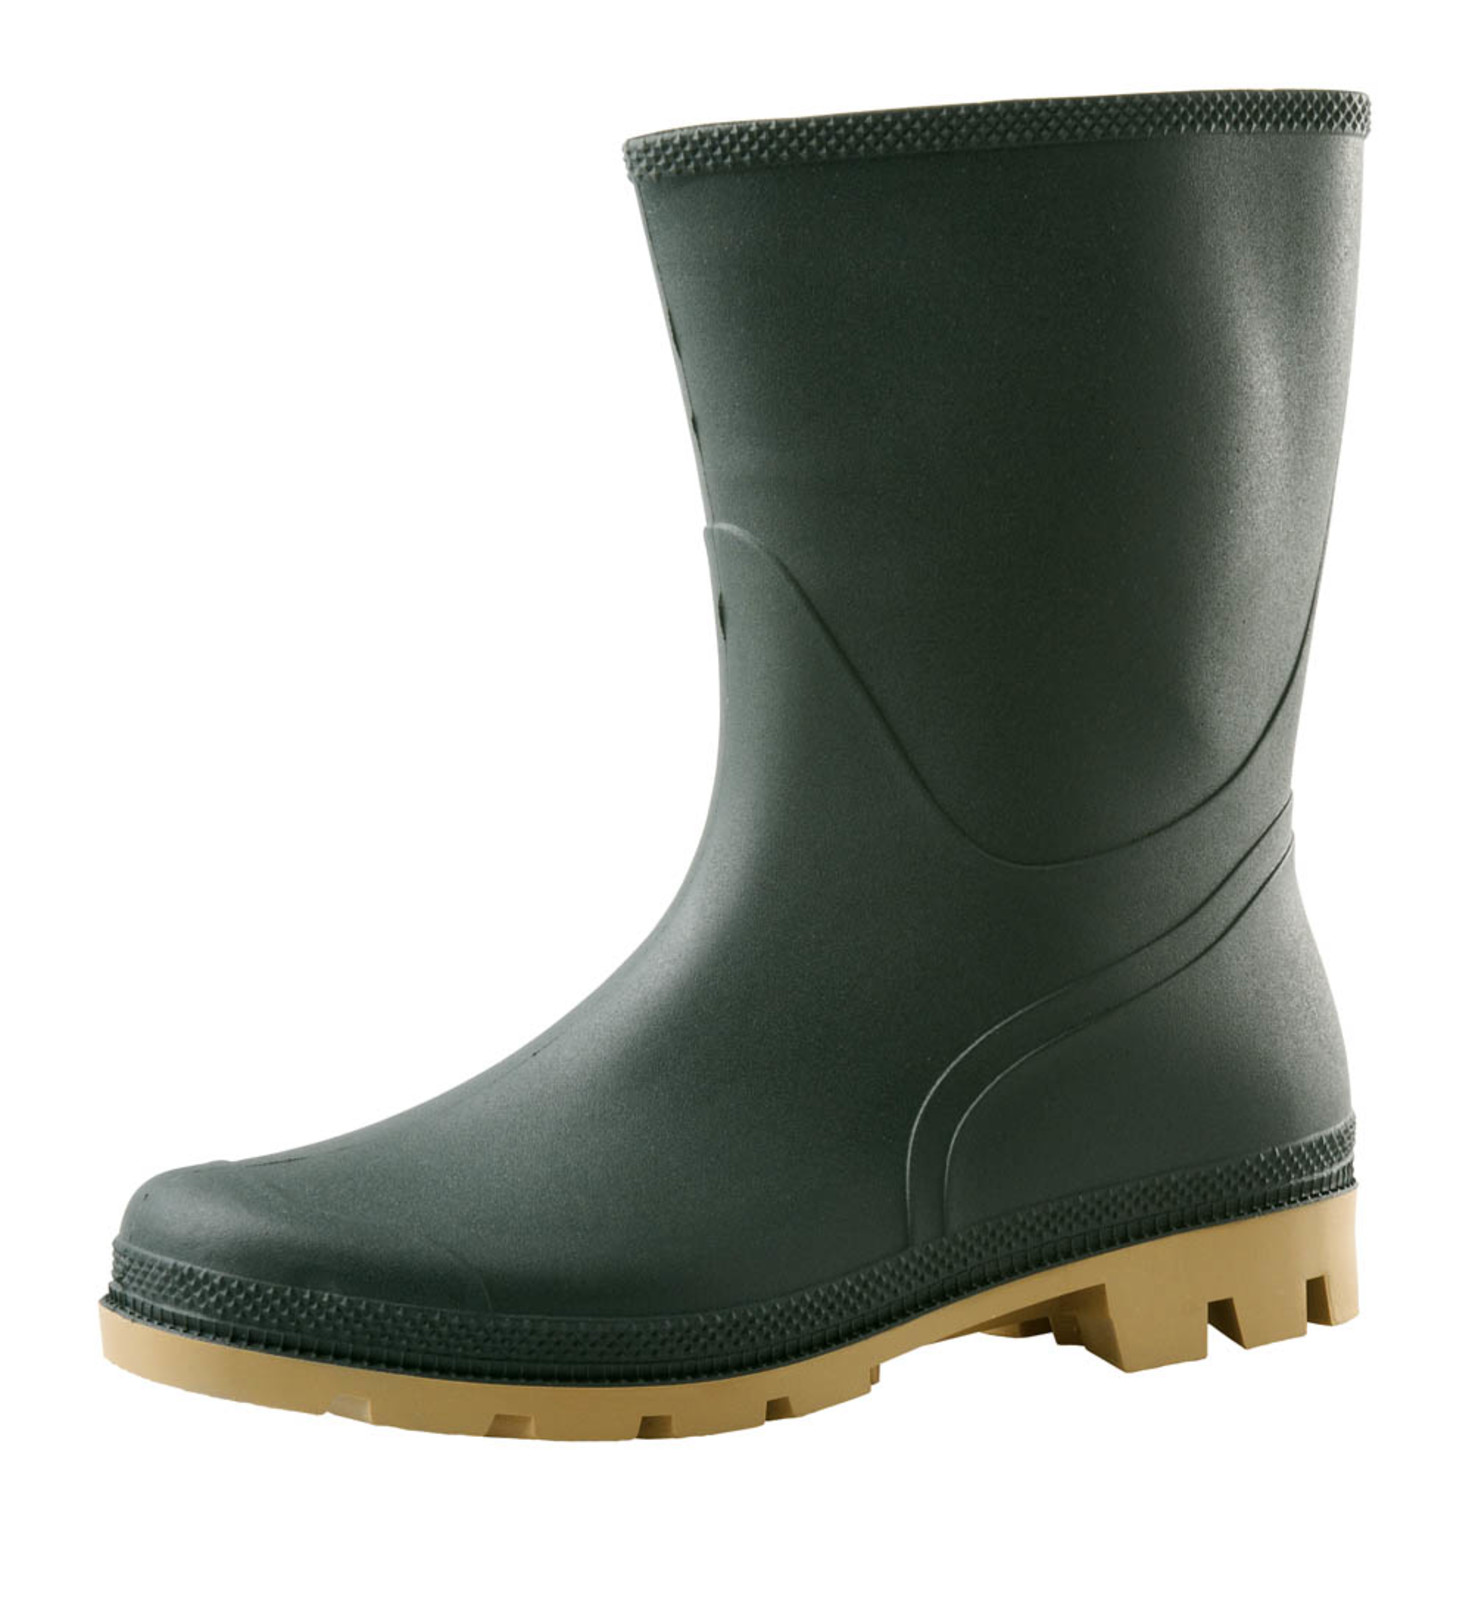 Gumáky Boots Troncheto PVC nízke - veľkosť: 39, farba: zelená